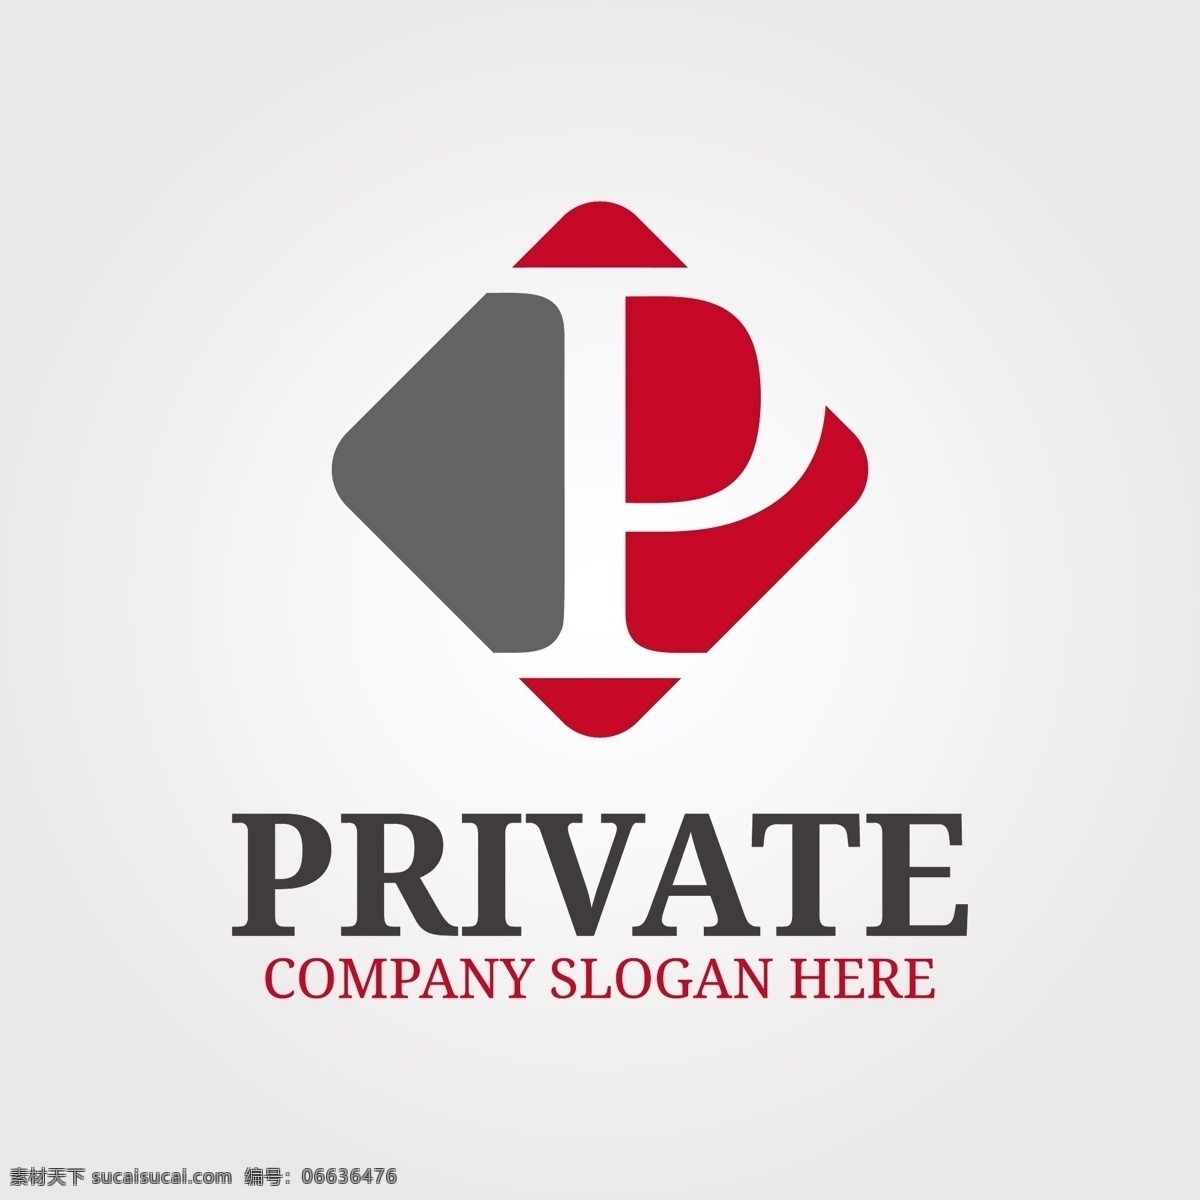 镂空 字母 p 菱形 背景 logo 模板 扁平化 logo模板 私有